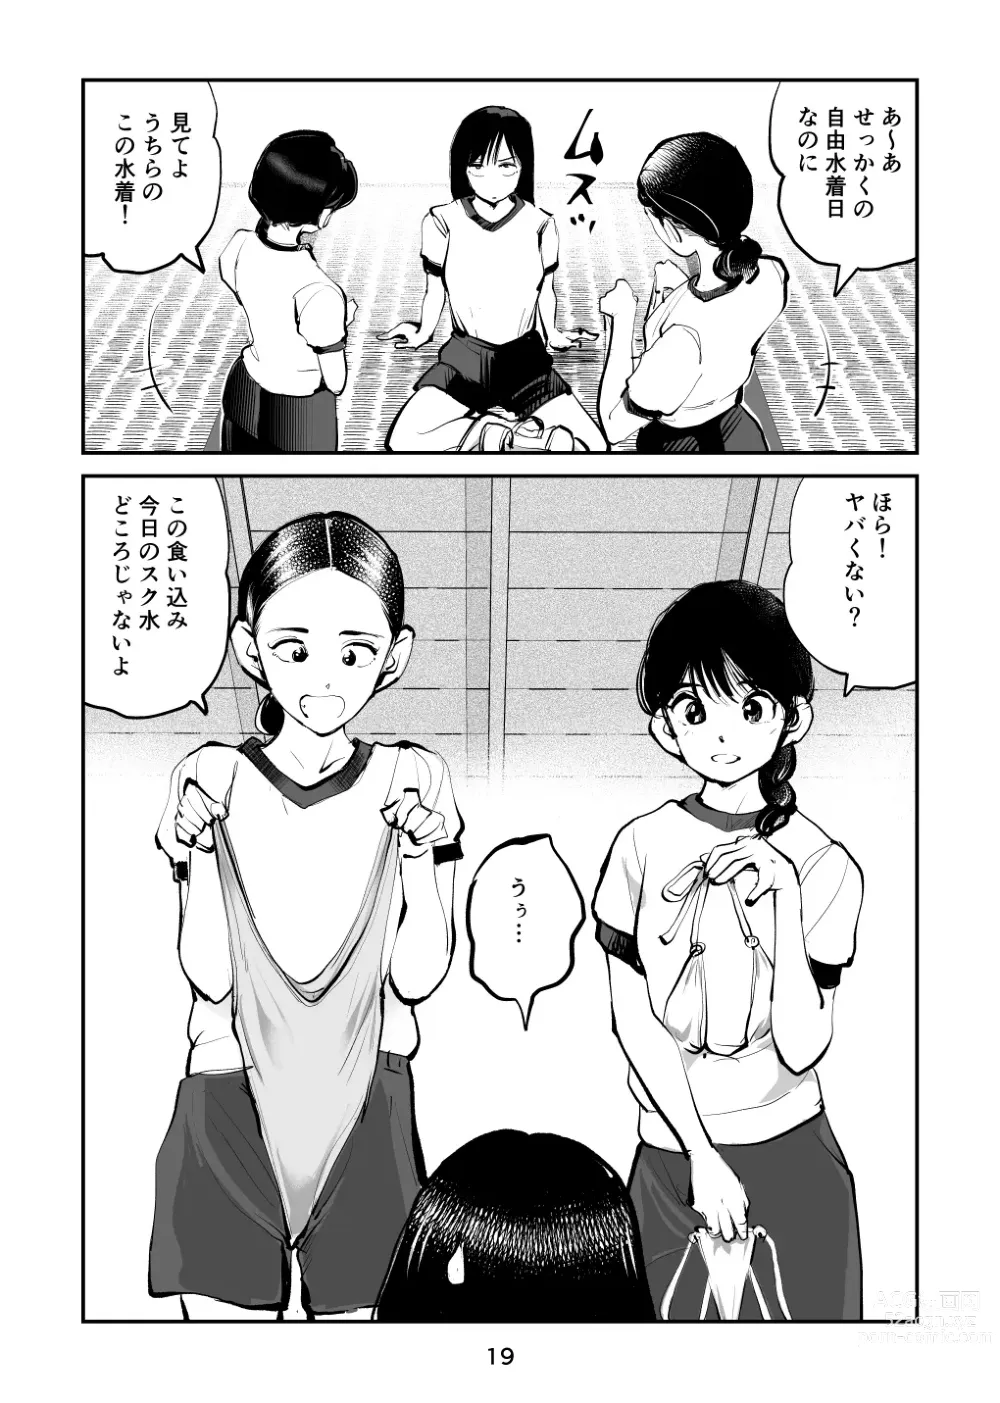 Page 19 of doujinshi Chinpo Shiikukakari 7